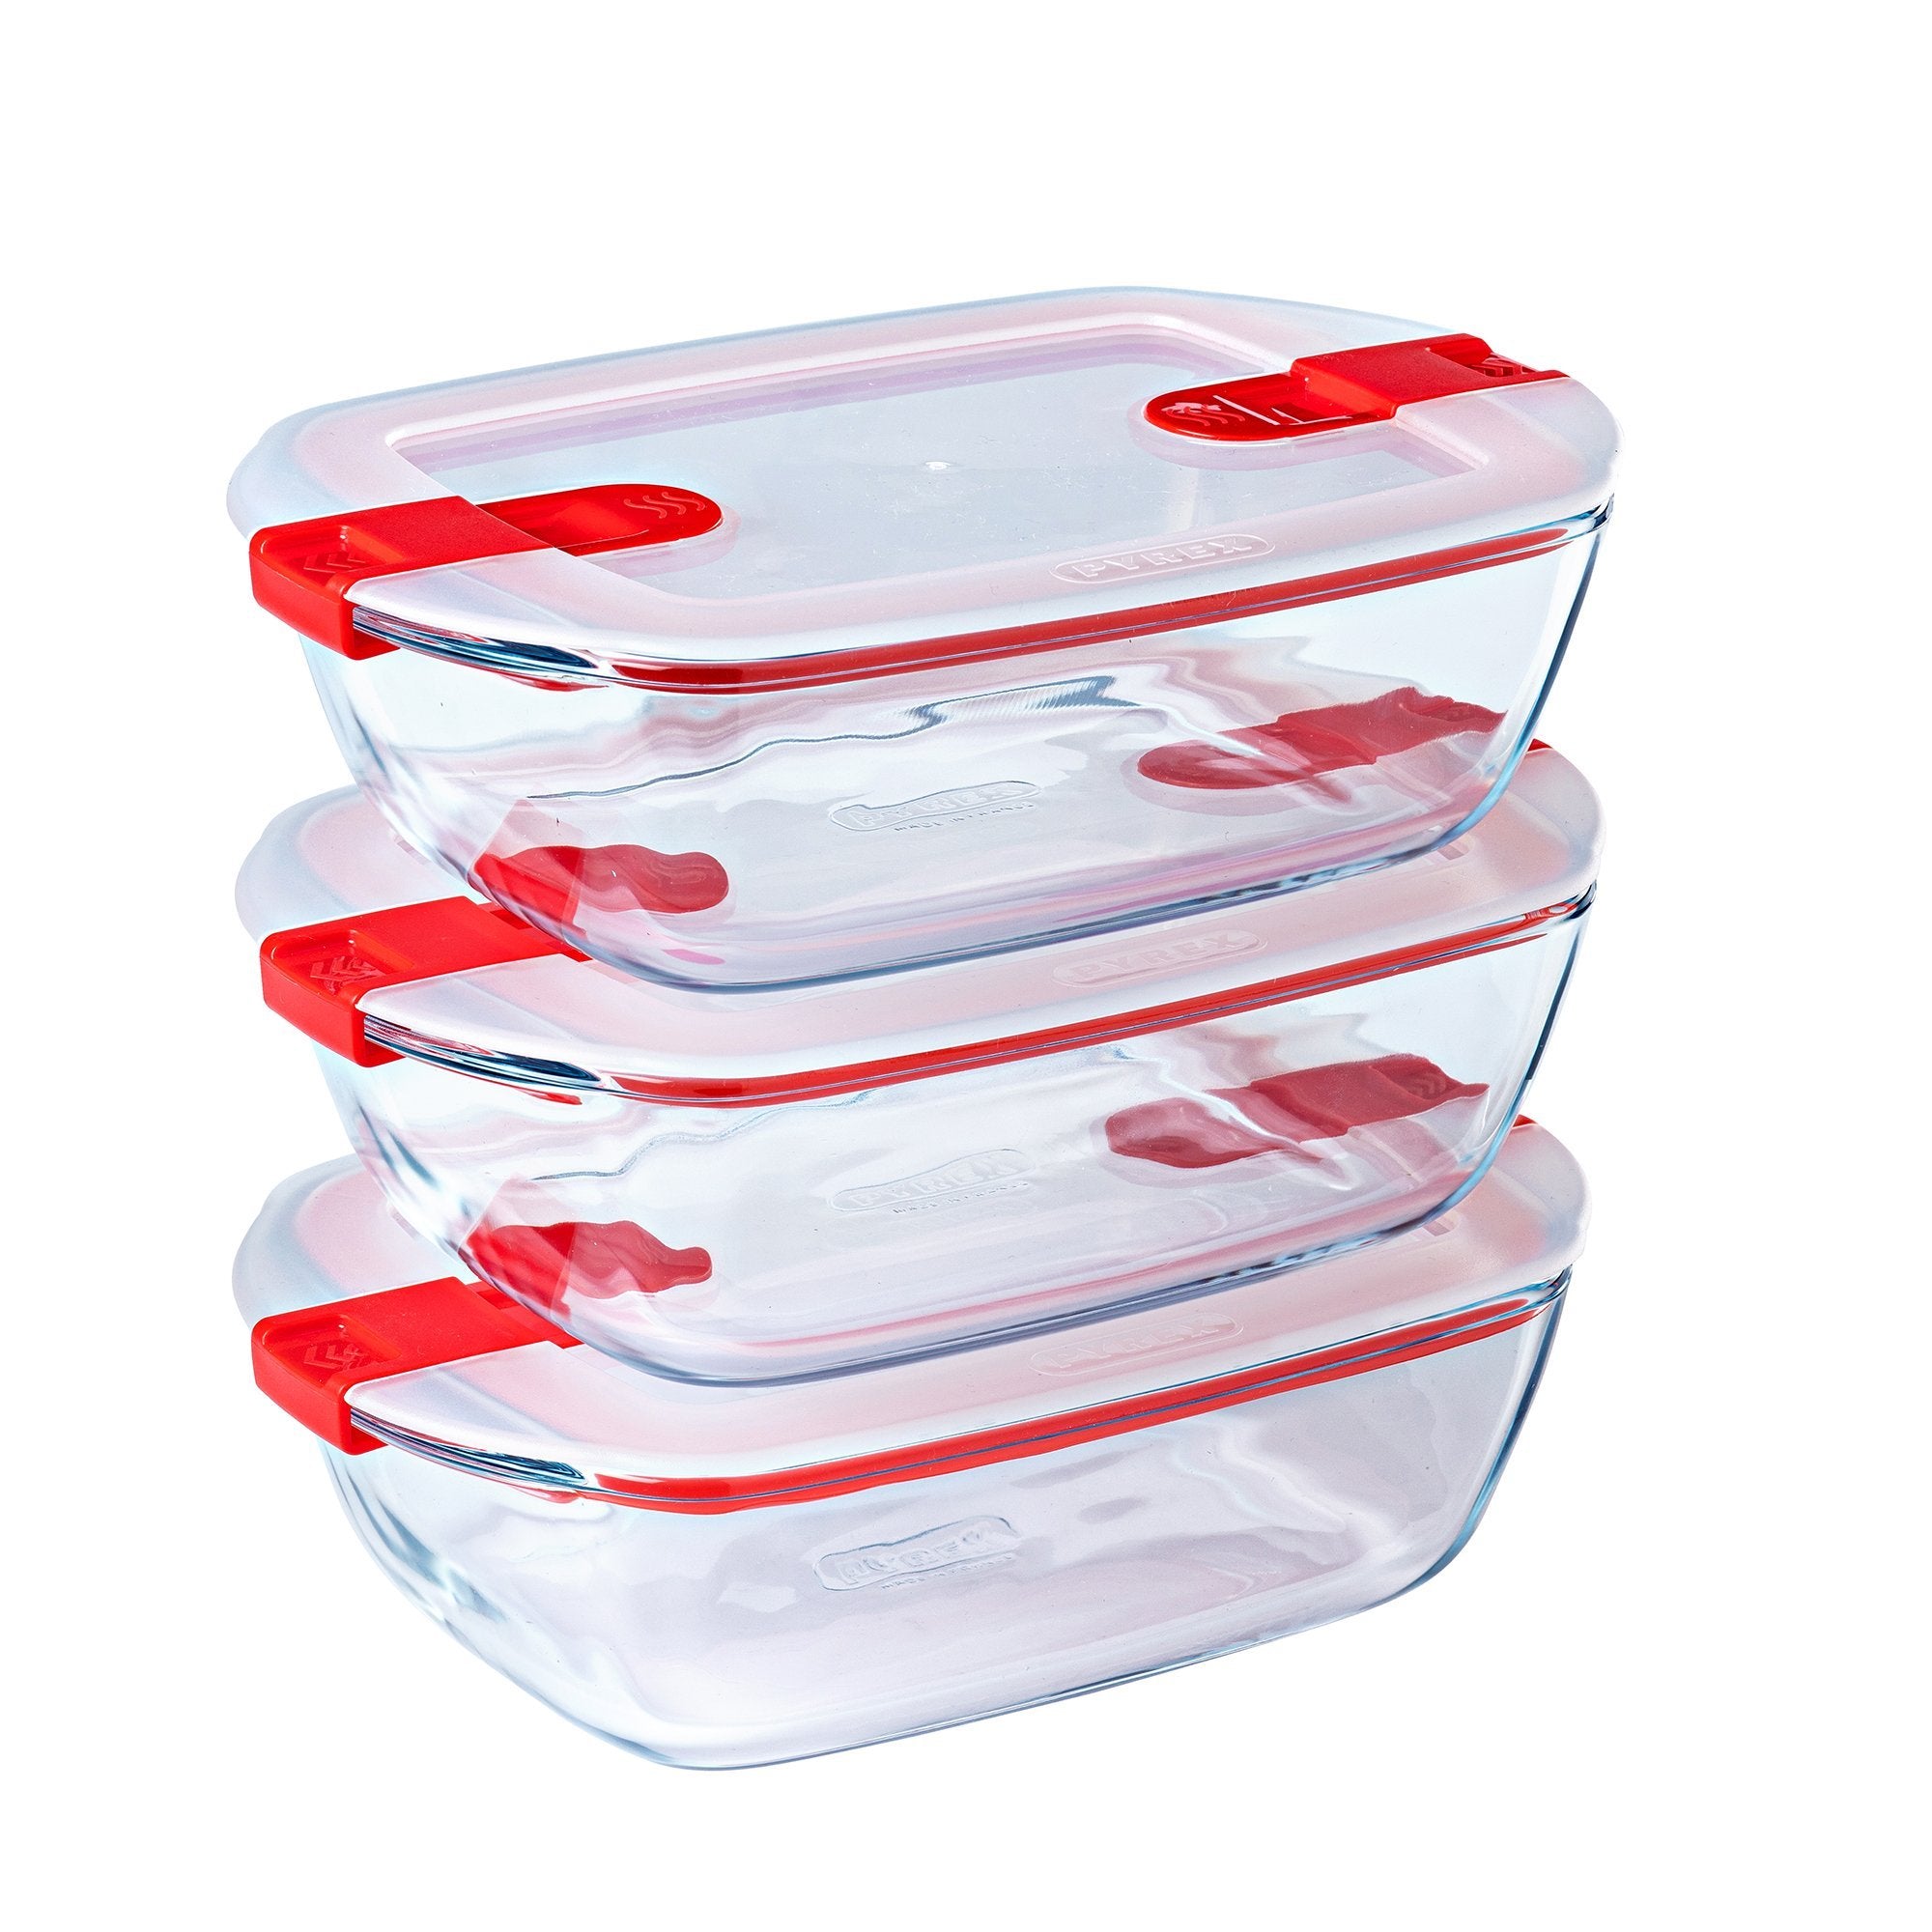 Recipientes de vidrio, Pyrex, con tapa para almacenamiento de alimentos,  cubierta roja